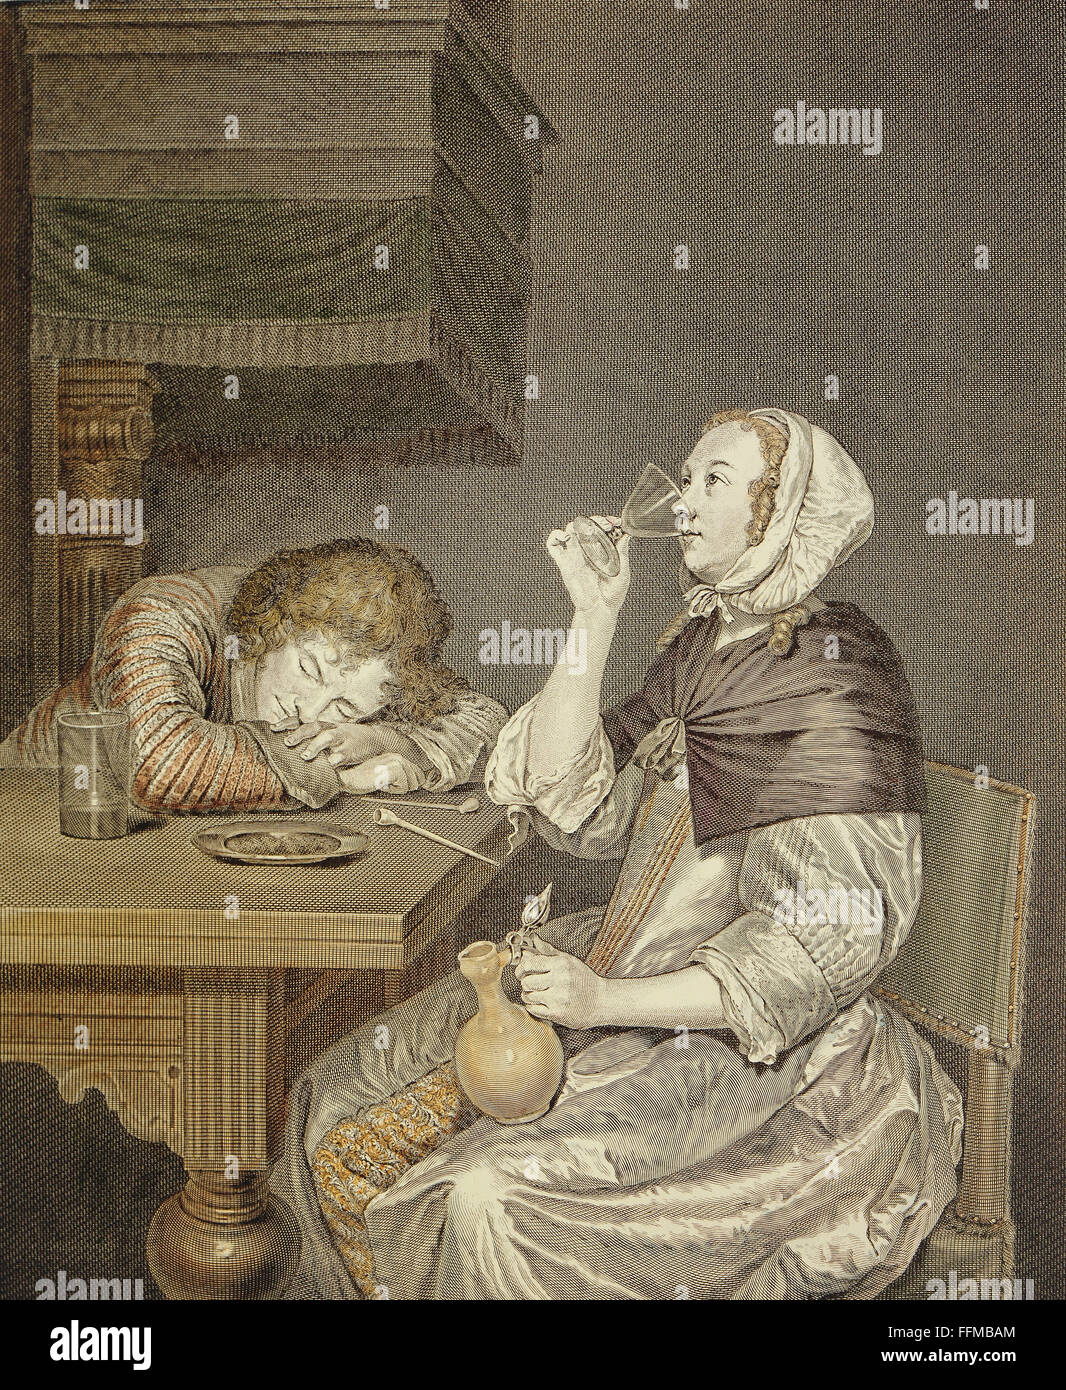 Alkohol, Weinrebe, 'La sante rendue' (Gesundheit restauriert), nach Gemälde von Gerhard ter Borch (1617 - 1681), Farbstich von Justus Chevillet (1729 - 1790), 36 x 30 cm, um 1750, Privatsammlung, Additional-Rights-Clearences-not available Stockfoto